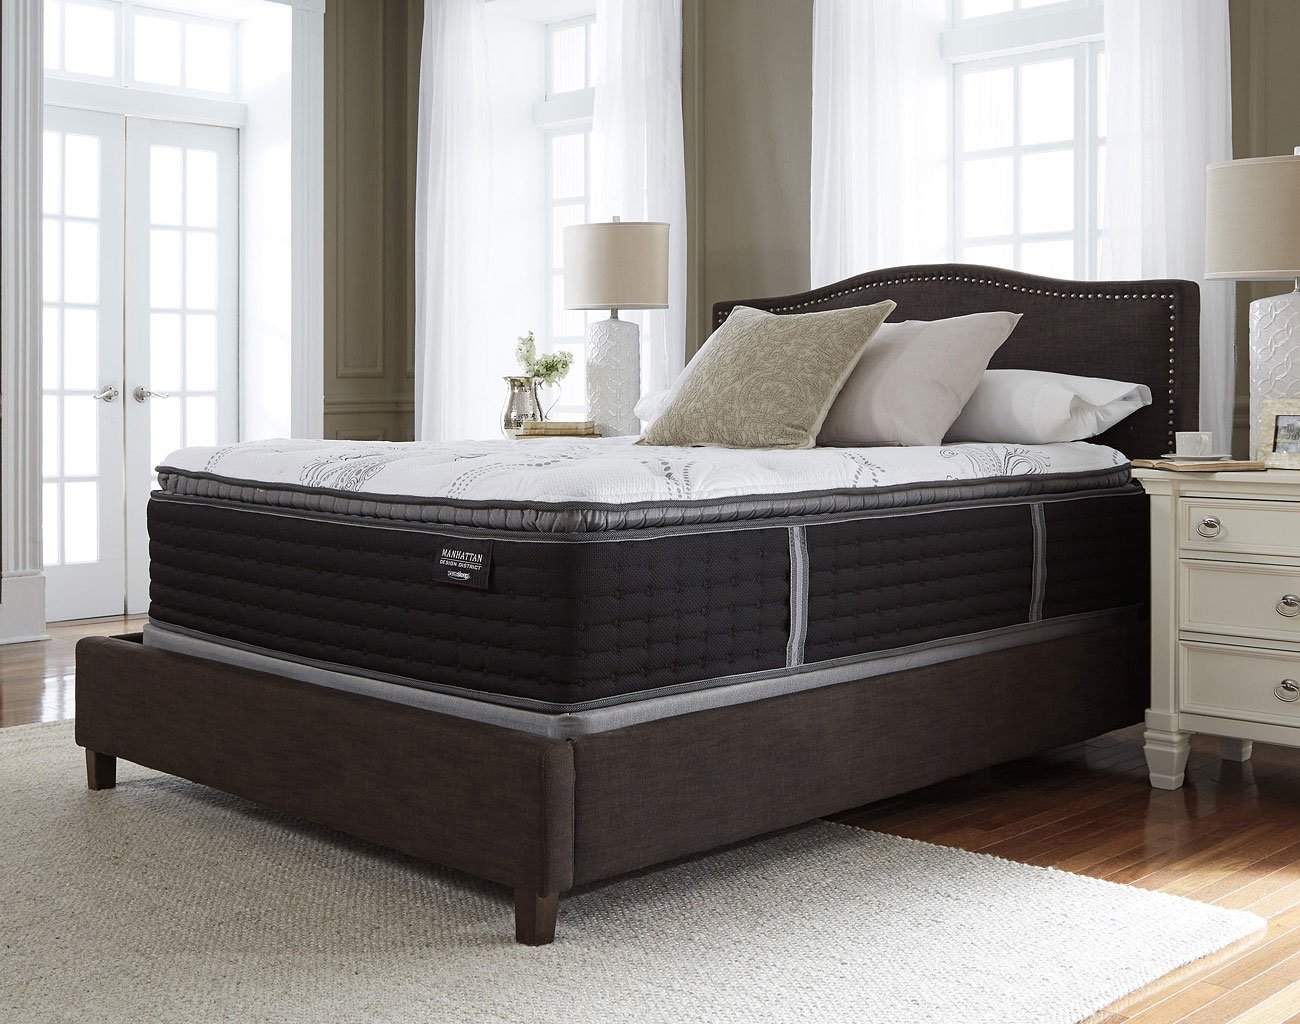 firm or pillow top mattress